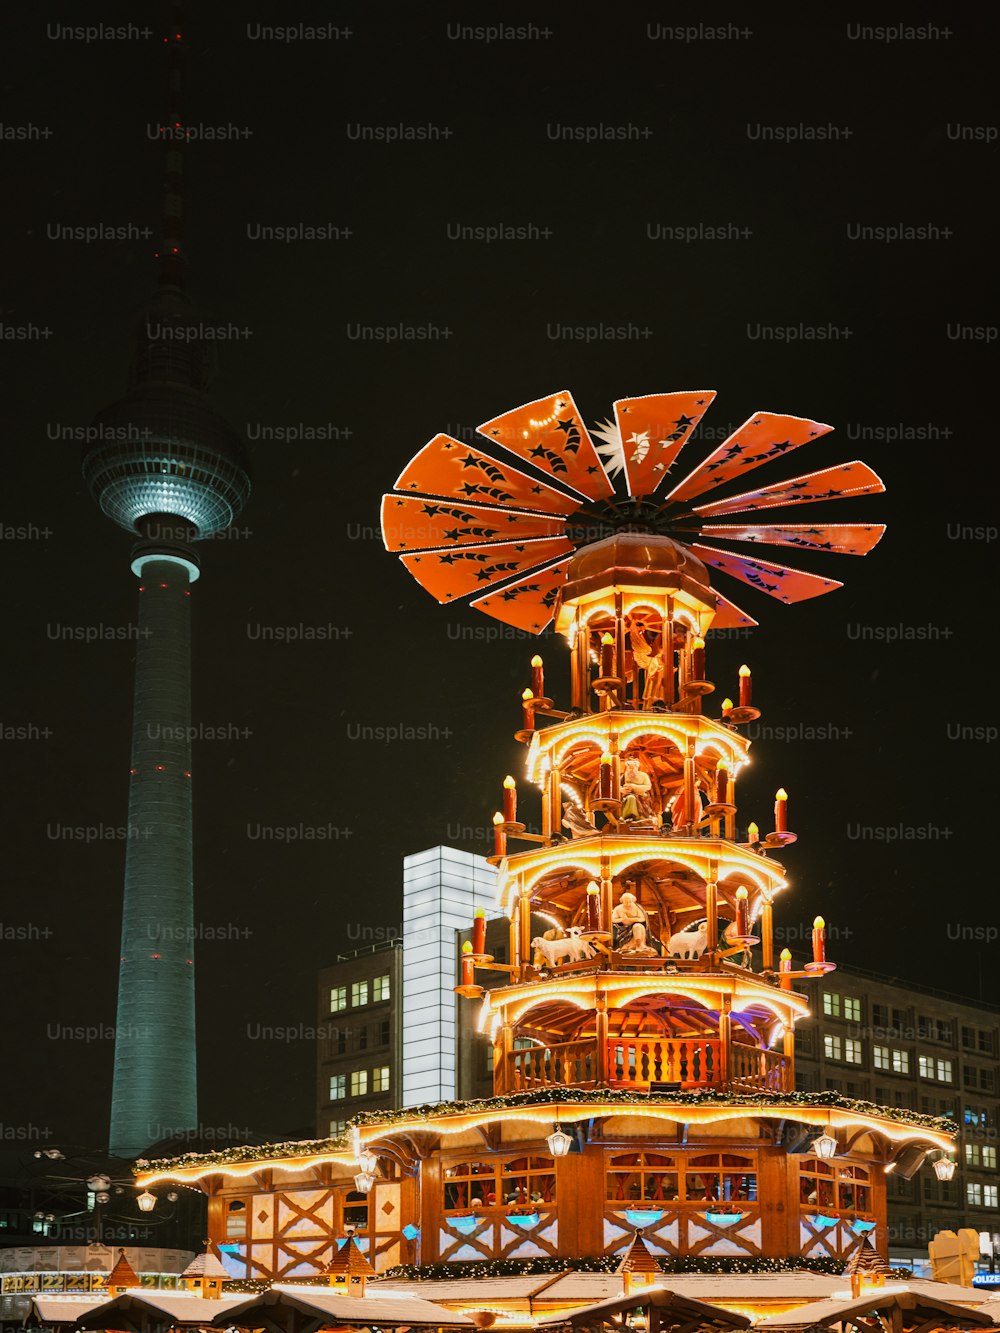 Une grande roue illuminée la nuit devant un grand immeuble